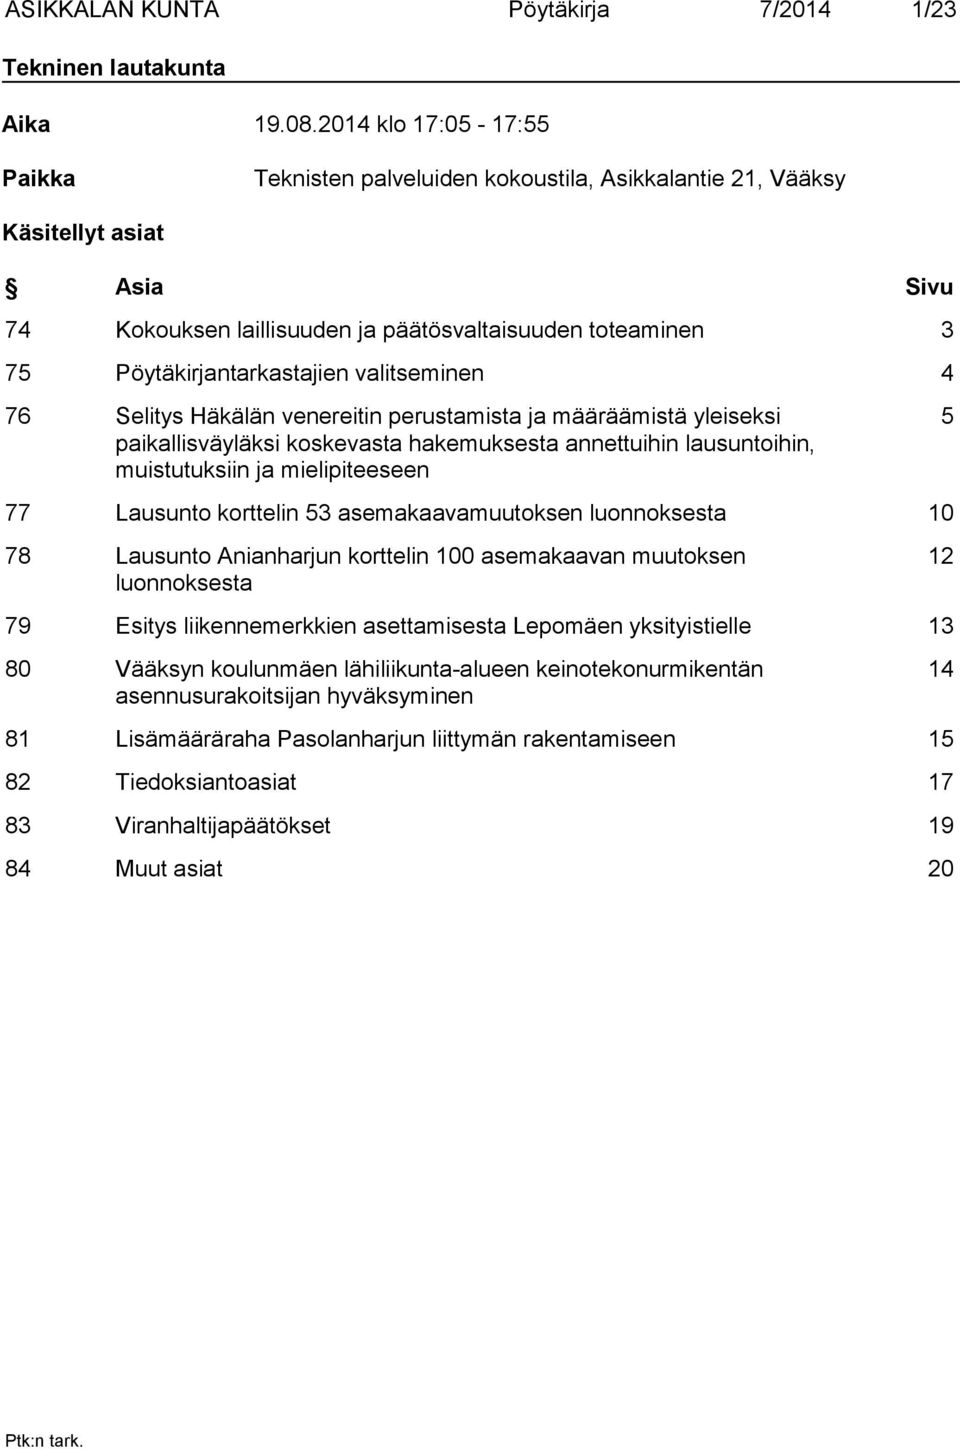 Pöytäkirjantarkastajien valitseminen 4 76 Selitys Häkälän venereitin perustamista ja määräämistä yleiseksi paikallisväyläksi koskevasta hakemuksesta annettuihin lausuntoihin, muistutuksiin ja